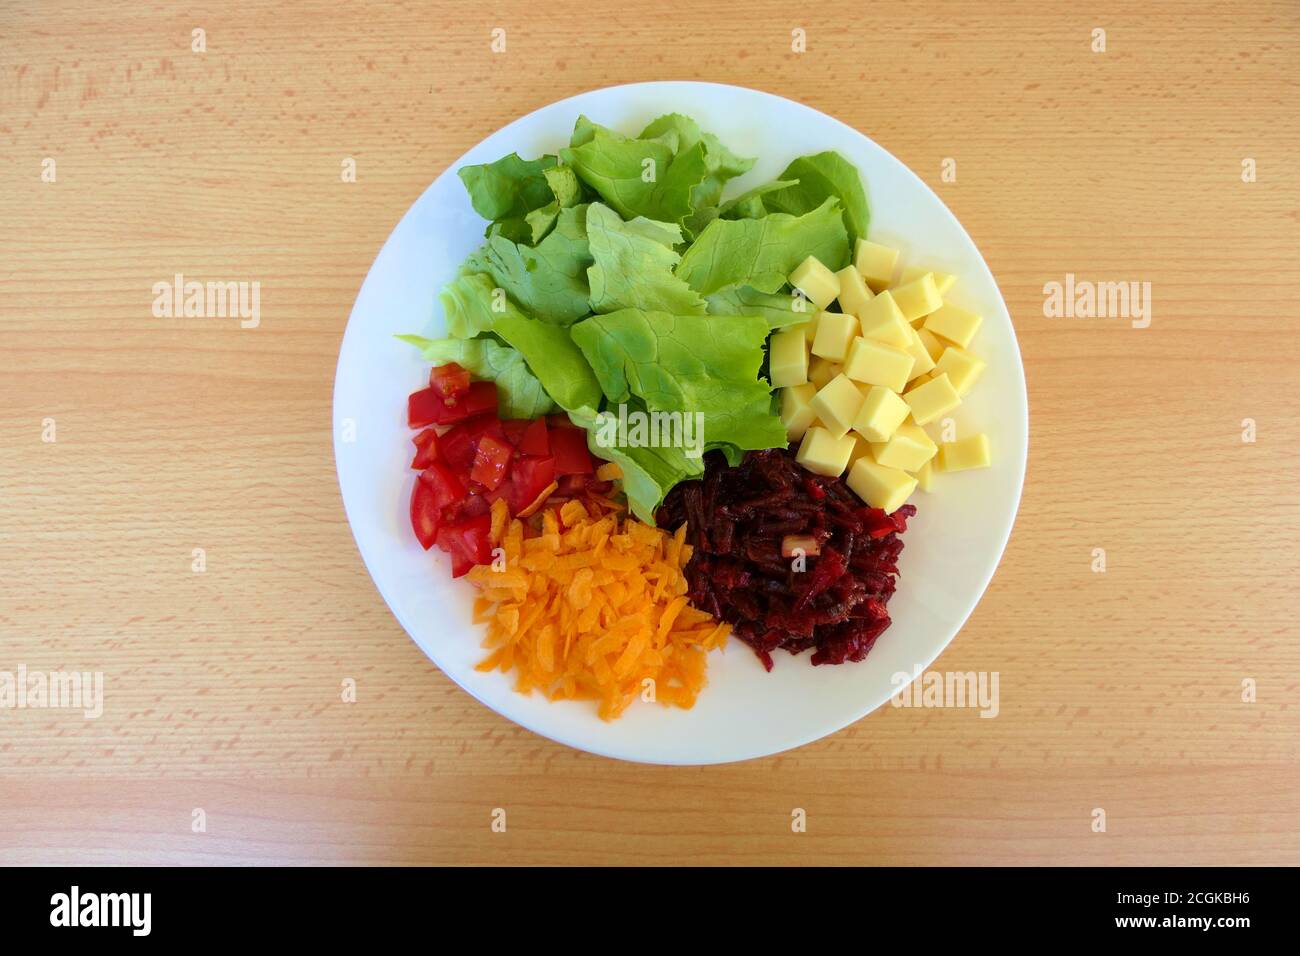 Draufsicht auf einen gesunden, selbstgemachten vegetarischen proteinreichen Salatteller mit grünem Salat, geriebenen Karotten und Rote Beete sowie gehackten Tomaten und Käse Stockfoto